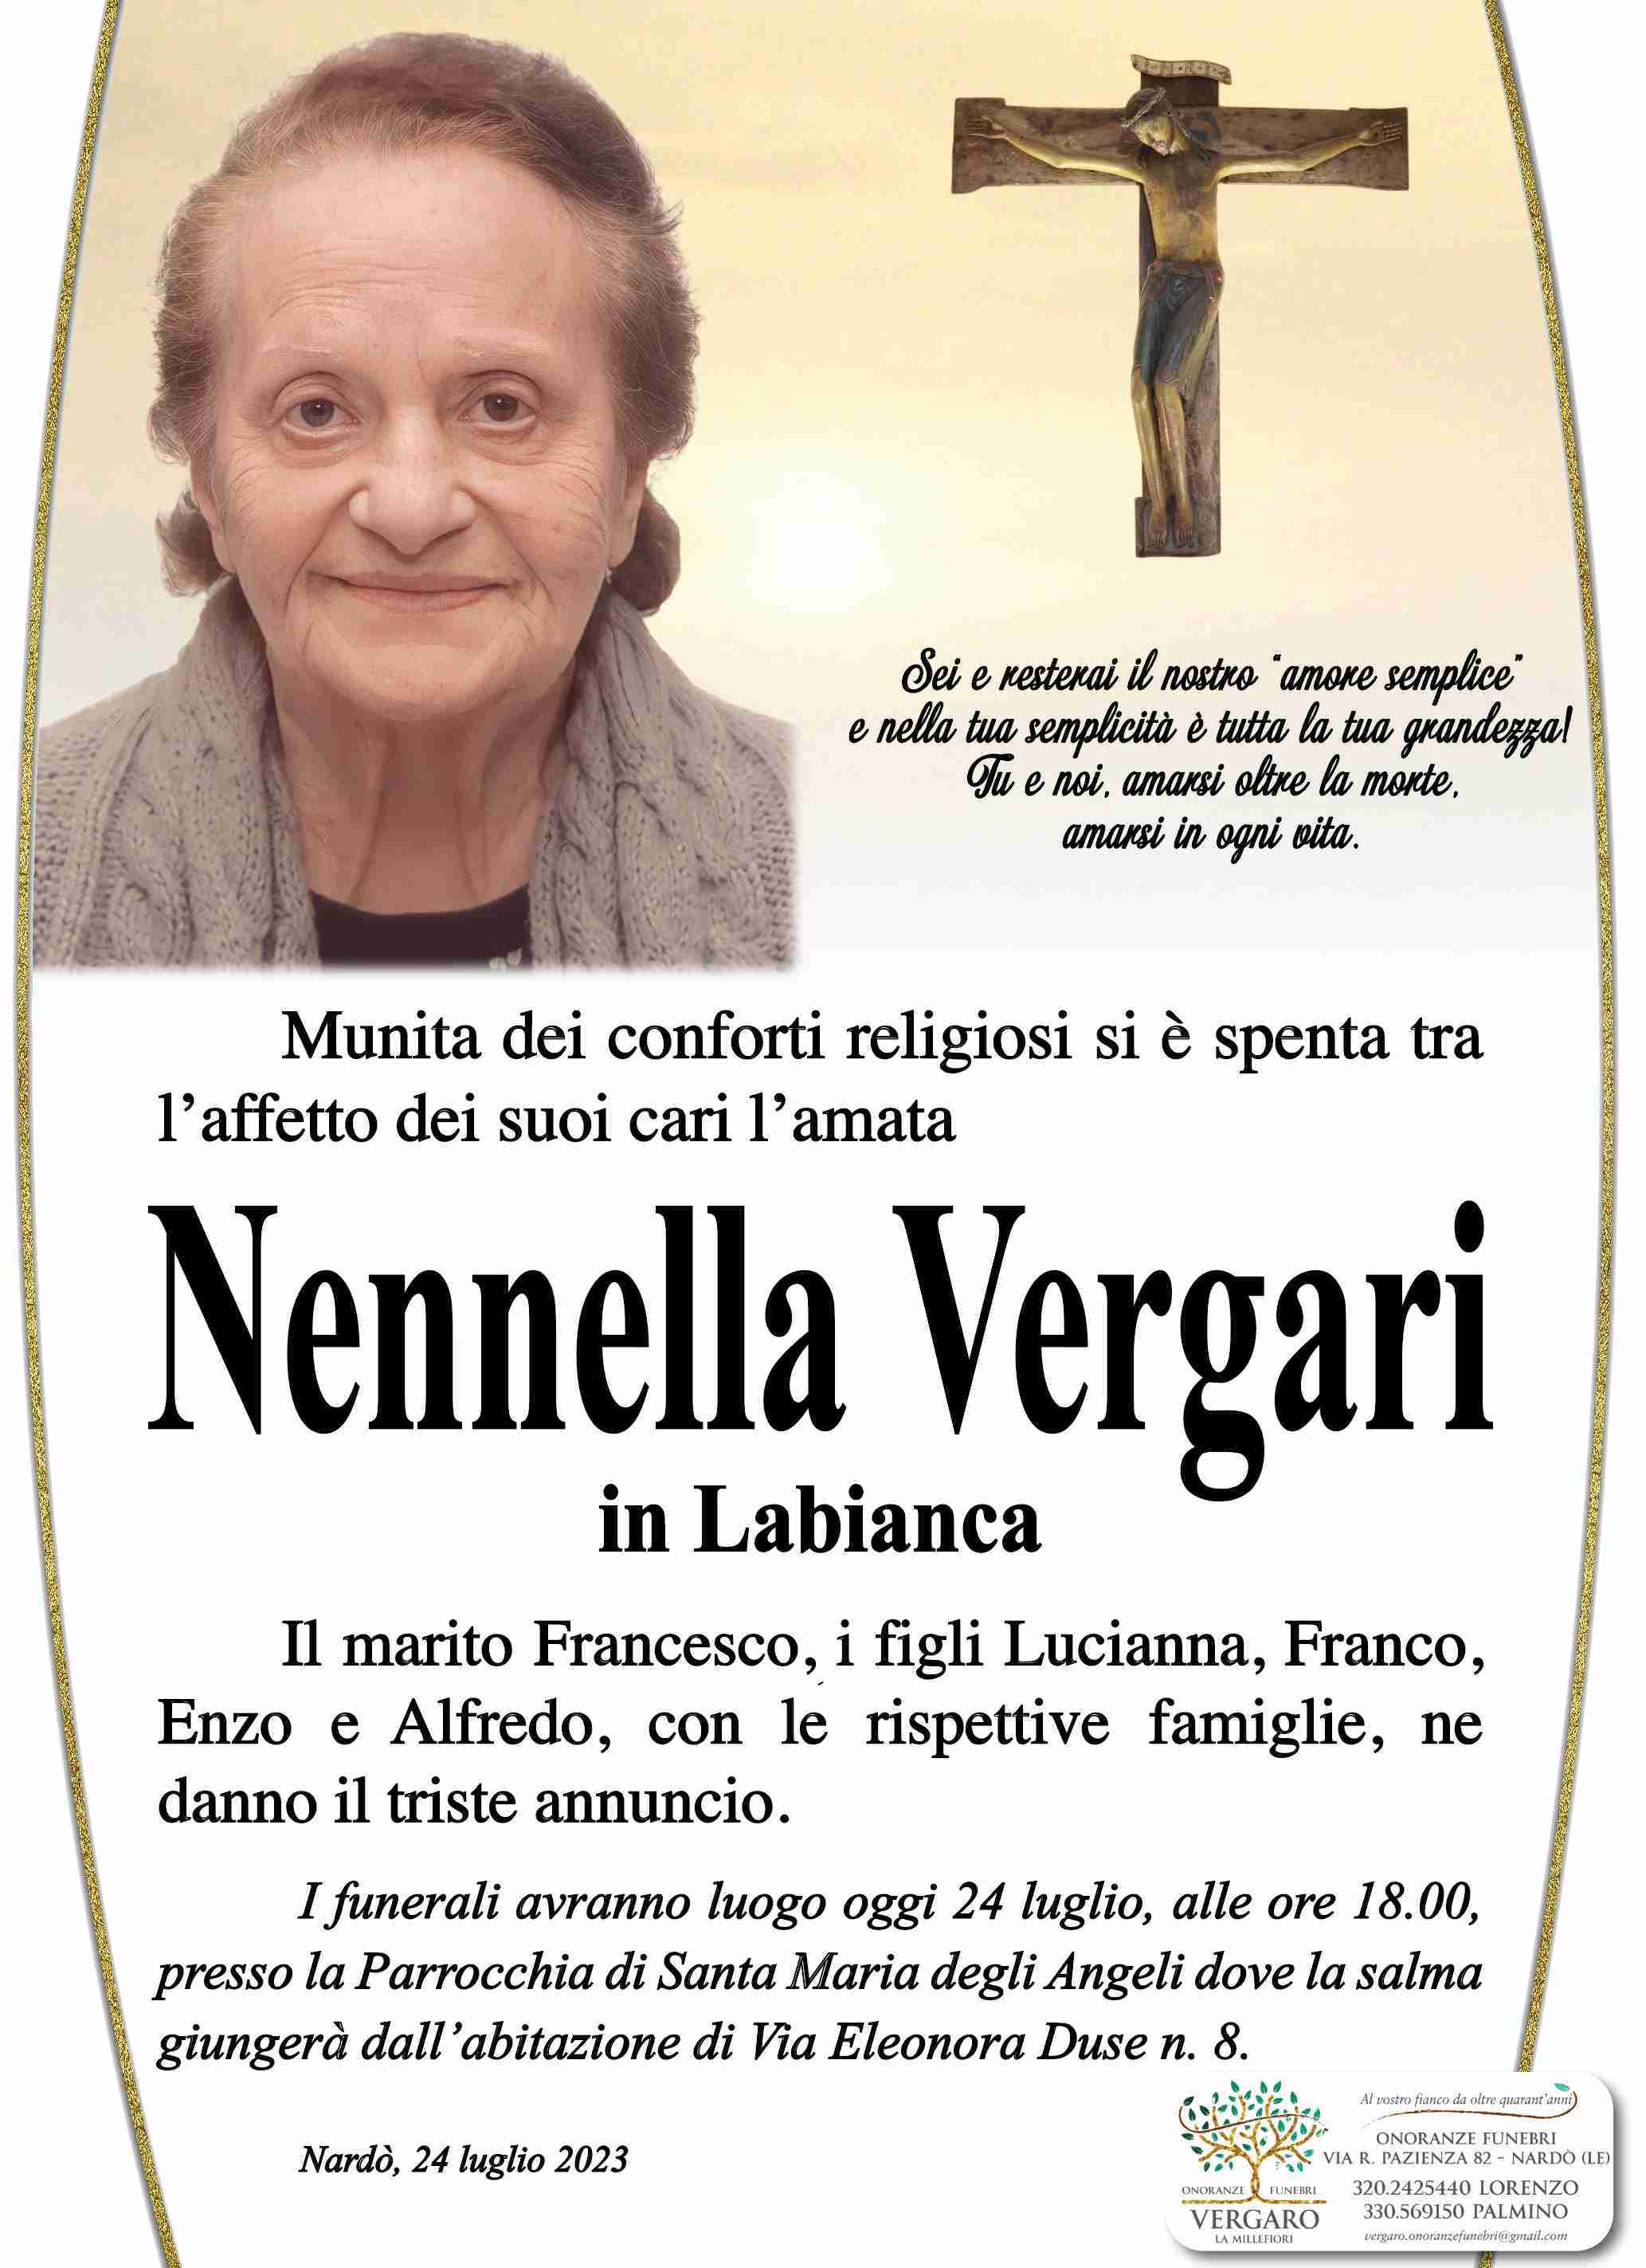 Nennella Vergari